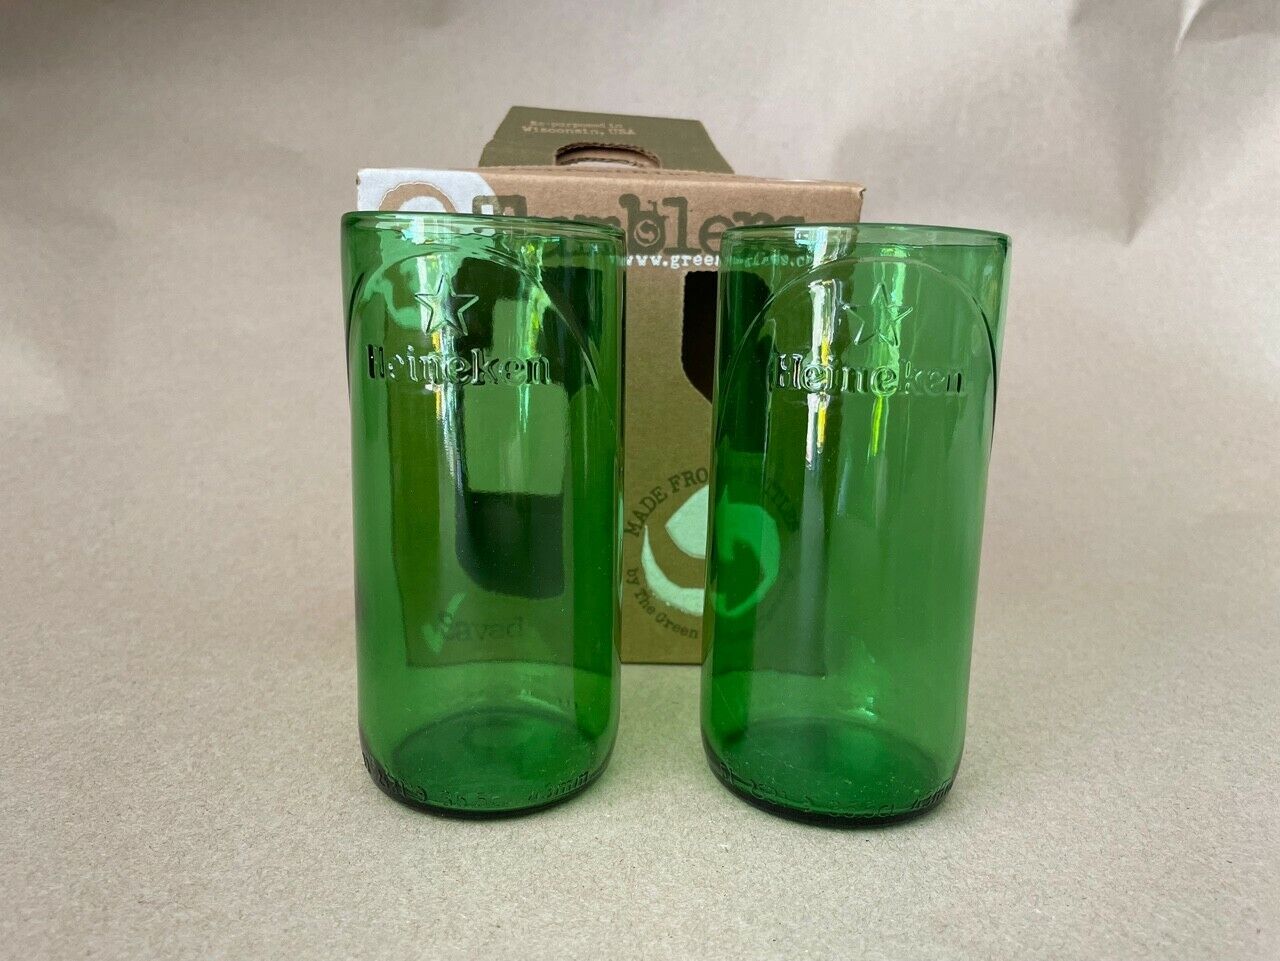 Heineken Glass Tumbler reproduced from Beer Bottle 5